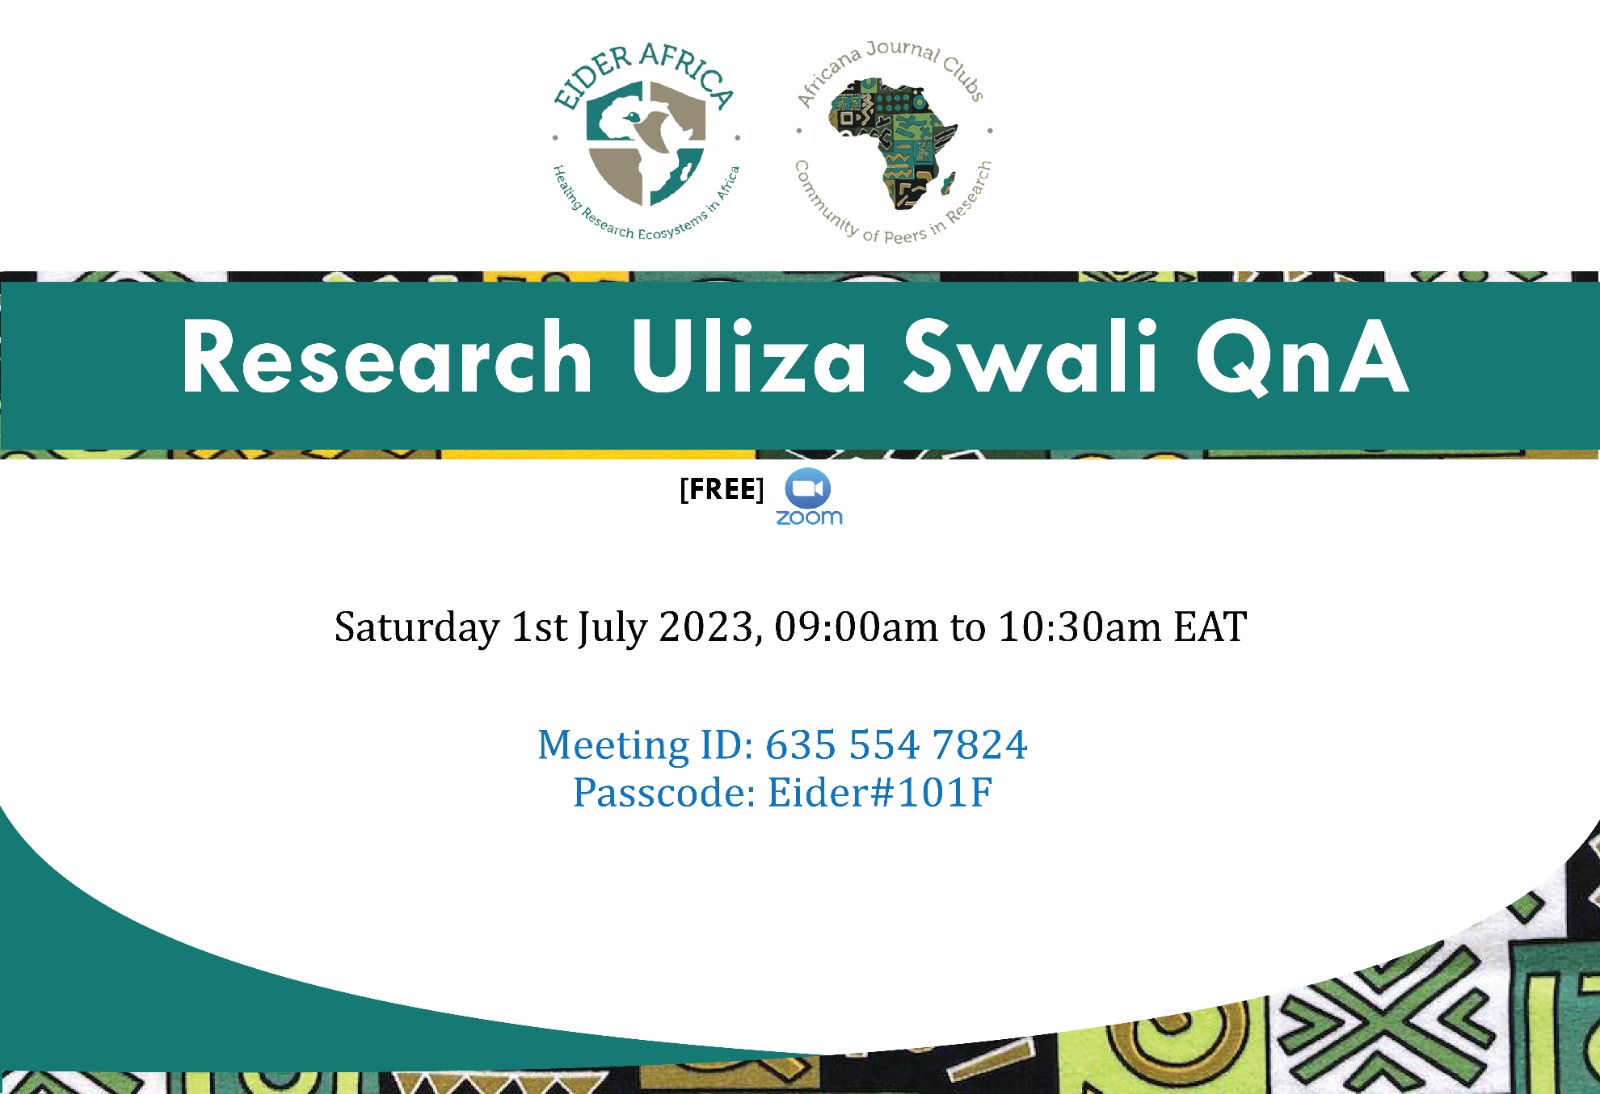 Research Uliza Swali QnA Session